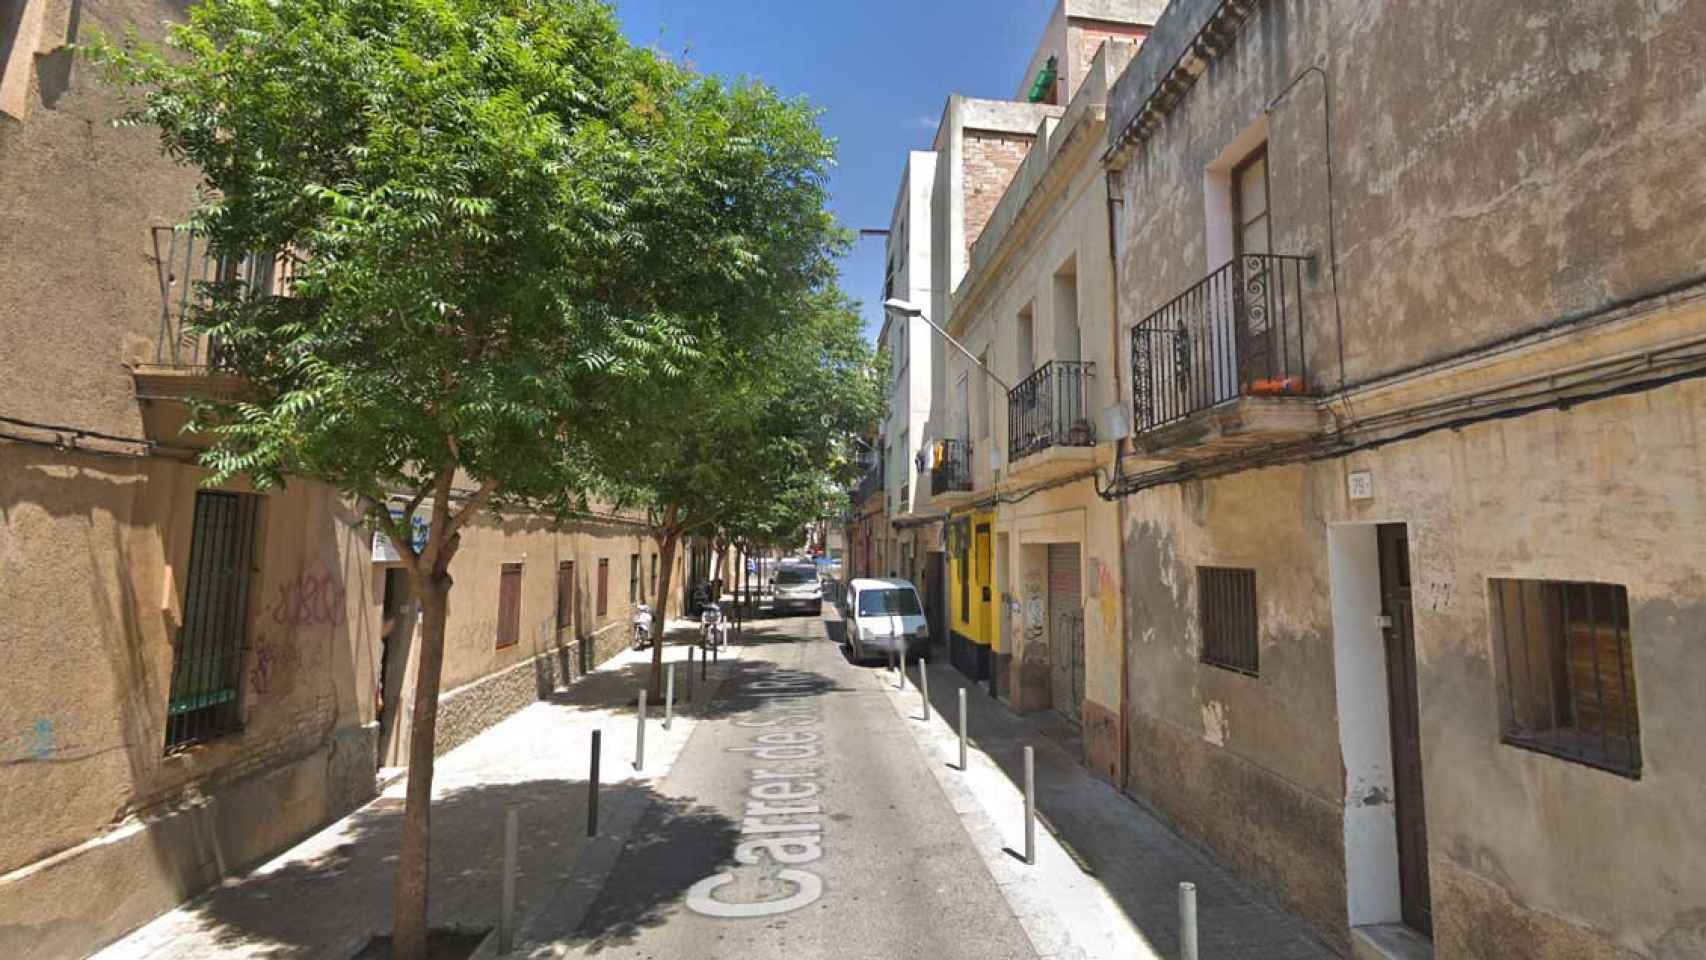 La pareja con discapacidad intelectual vive en un bajo okupado de L'Hospitalet de Llobregat / GOOGLE STREET VIEW